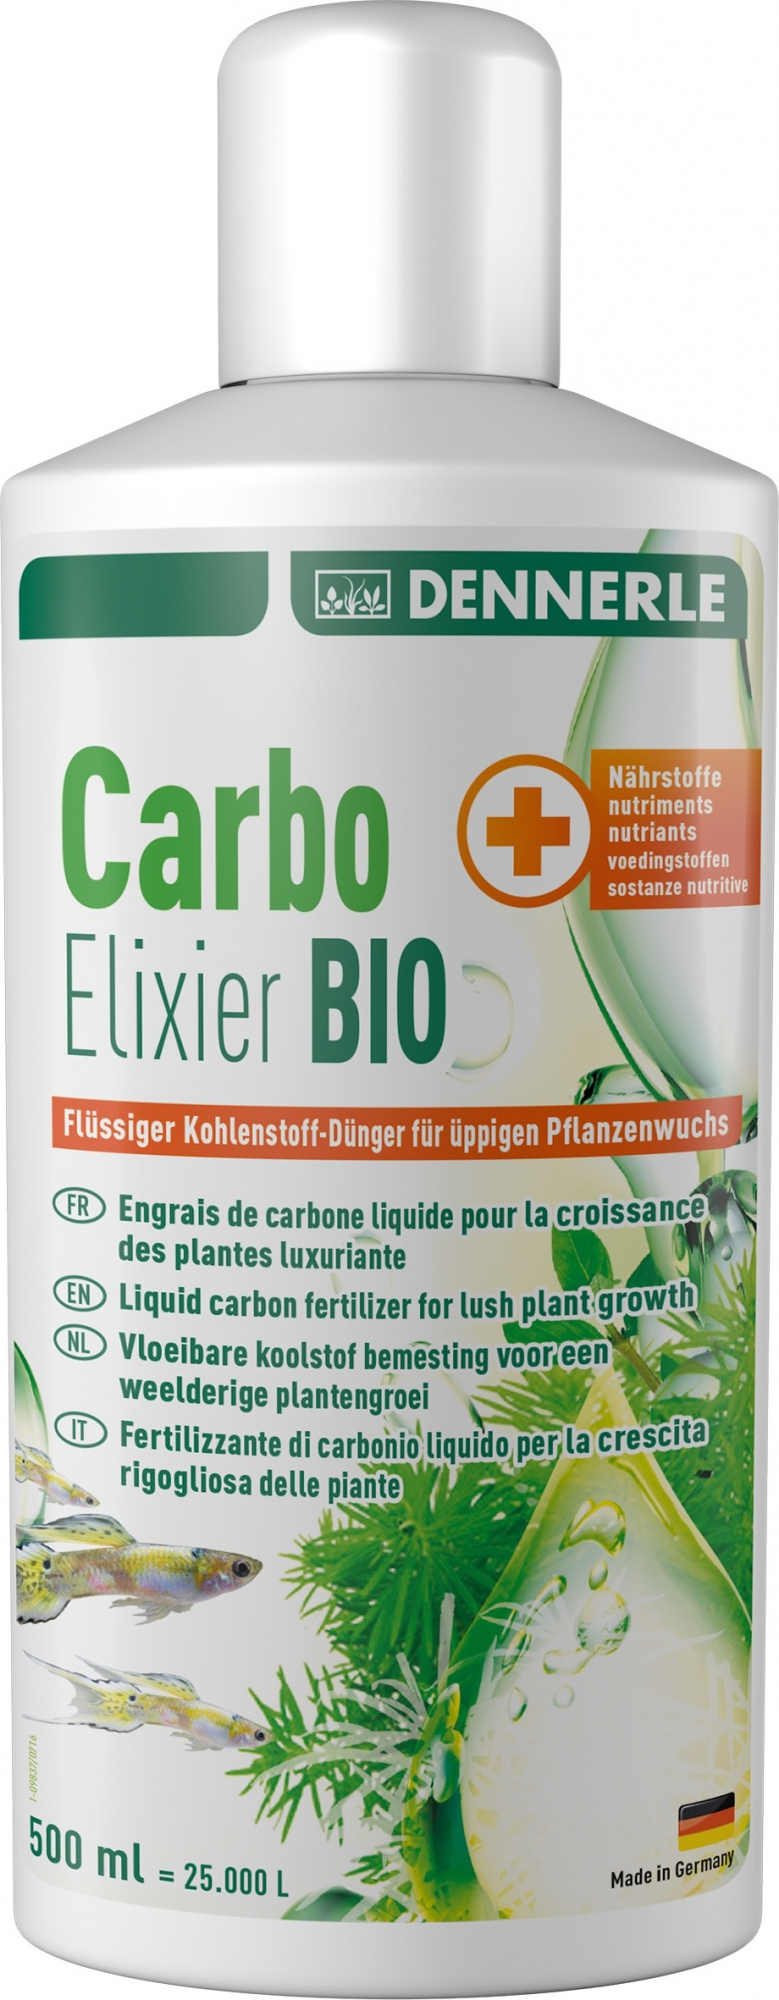 Abono carbónico líquido Carbo Elixier Bio DENNERLE